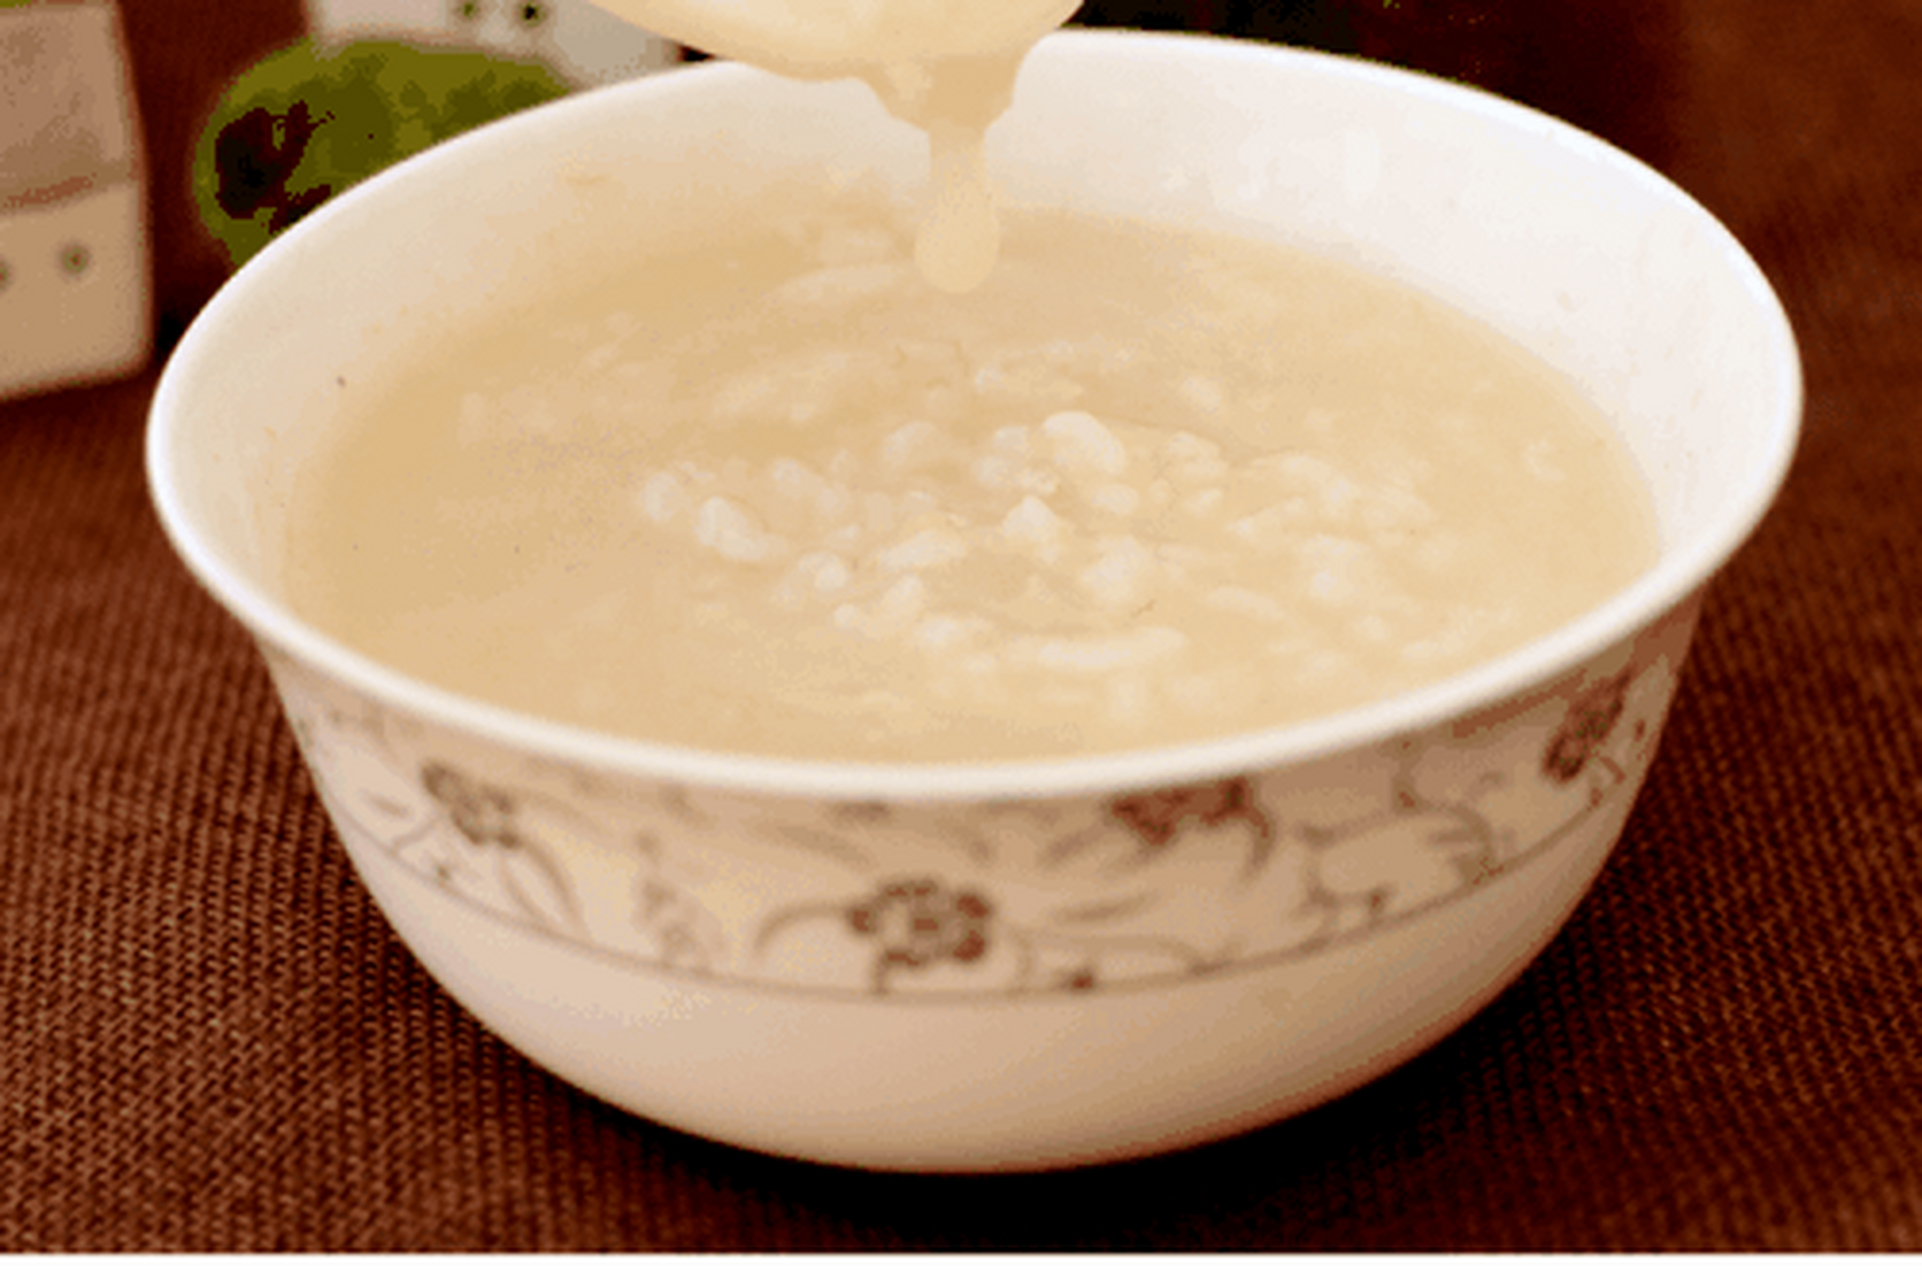 粯(xiàn)子粥,即元麦粥,又称土咖啡,粯子粥是靖江尤其是老岸地区家